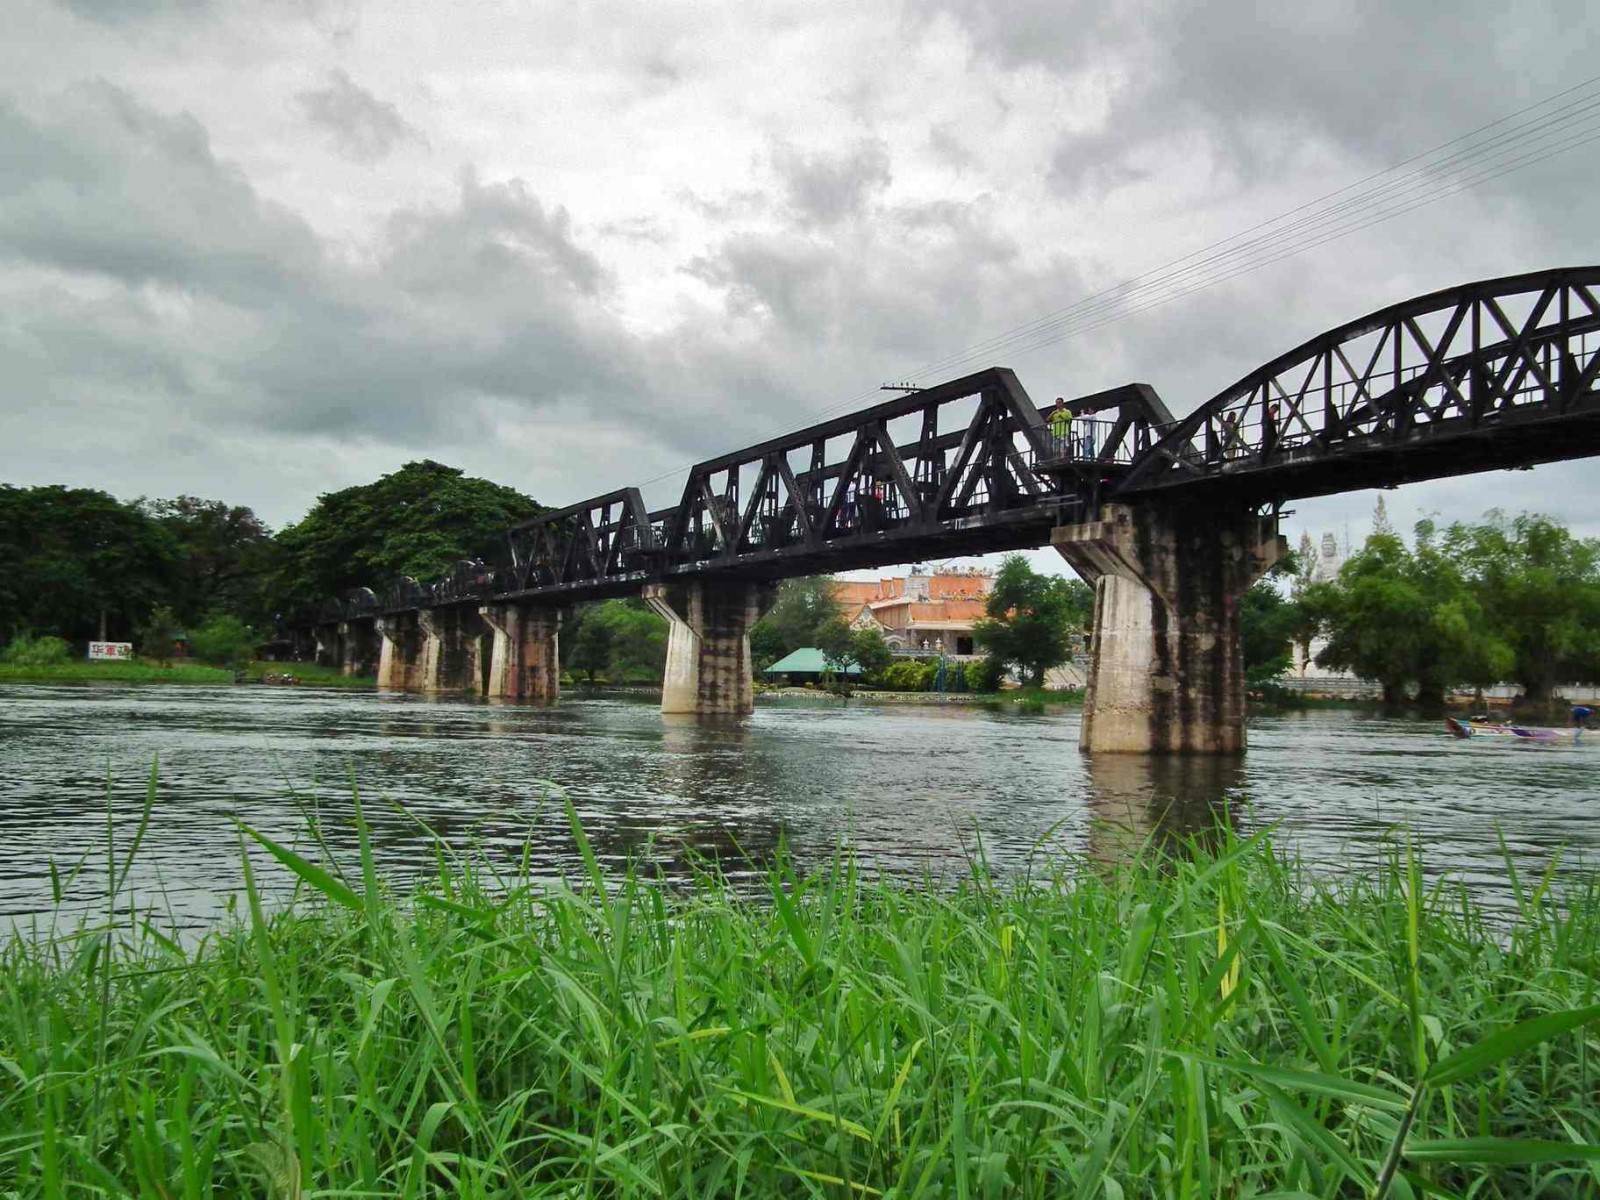 River Kwai Bridge
